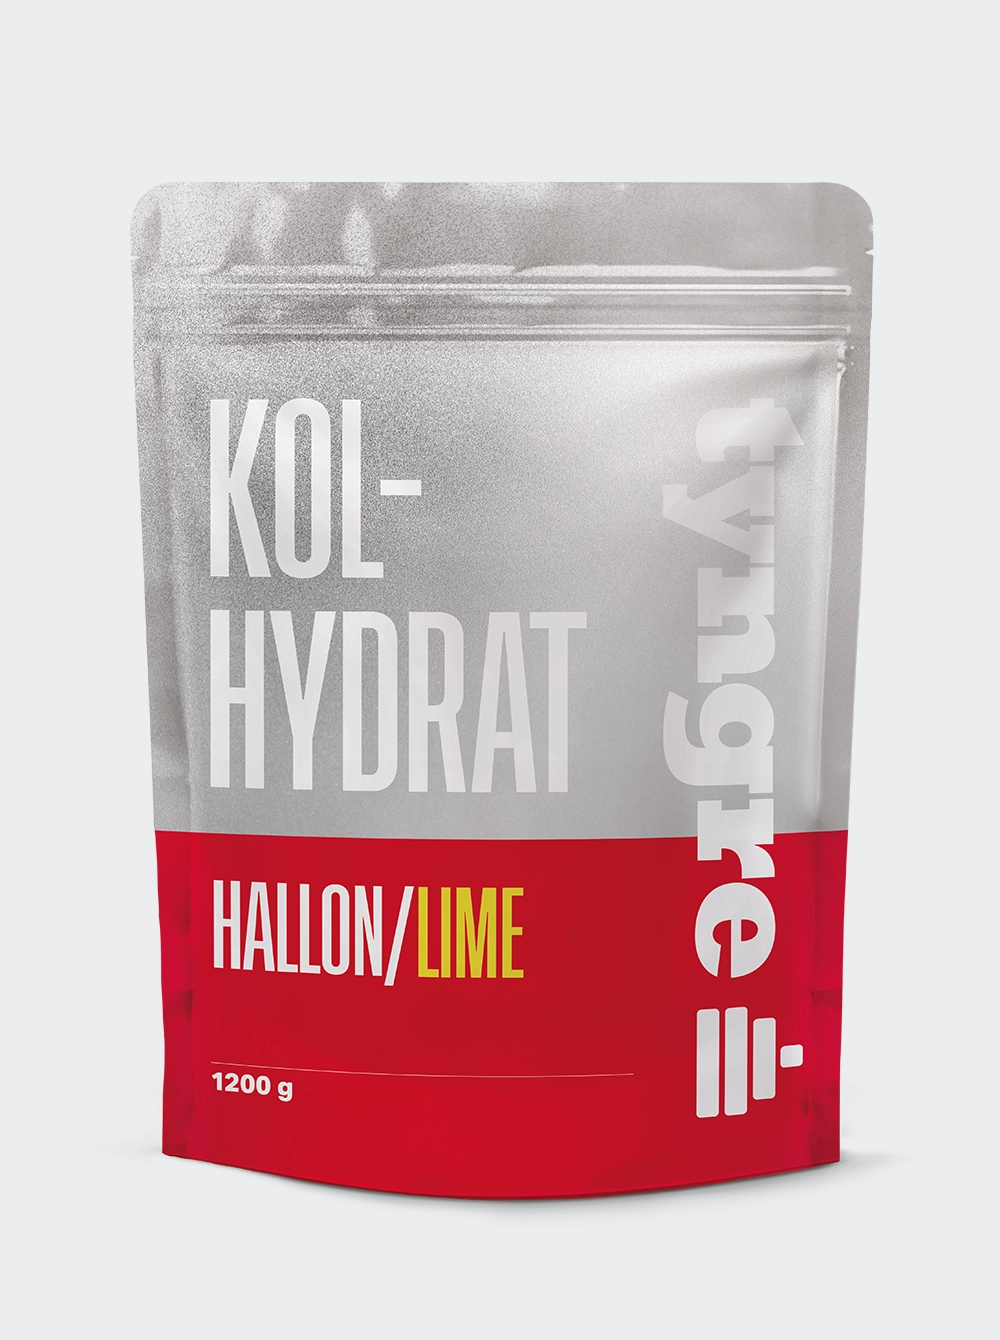 Tyngre Kolhydrat - Hallon/Lime 1200g